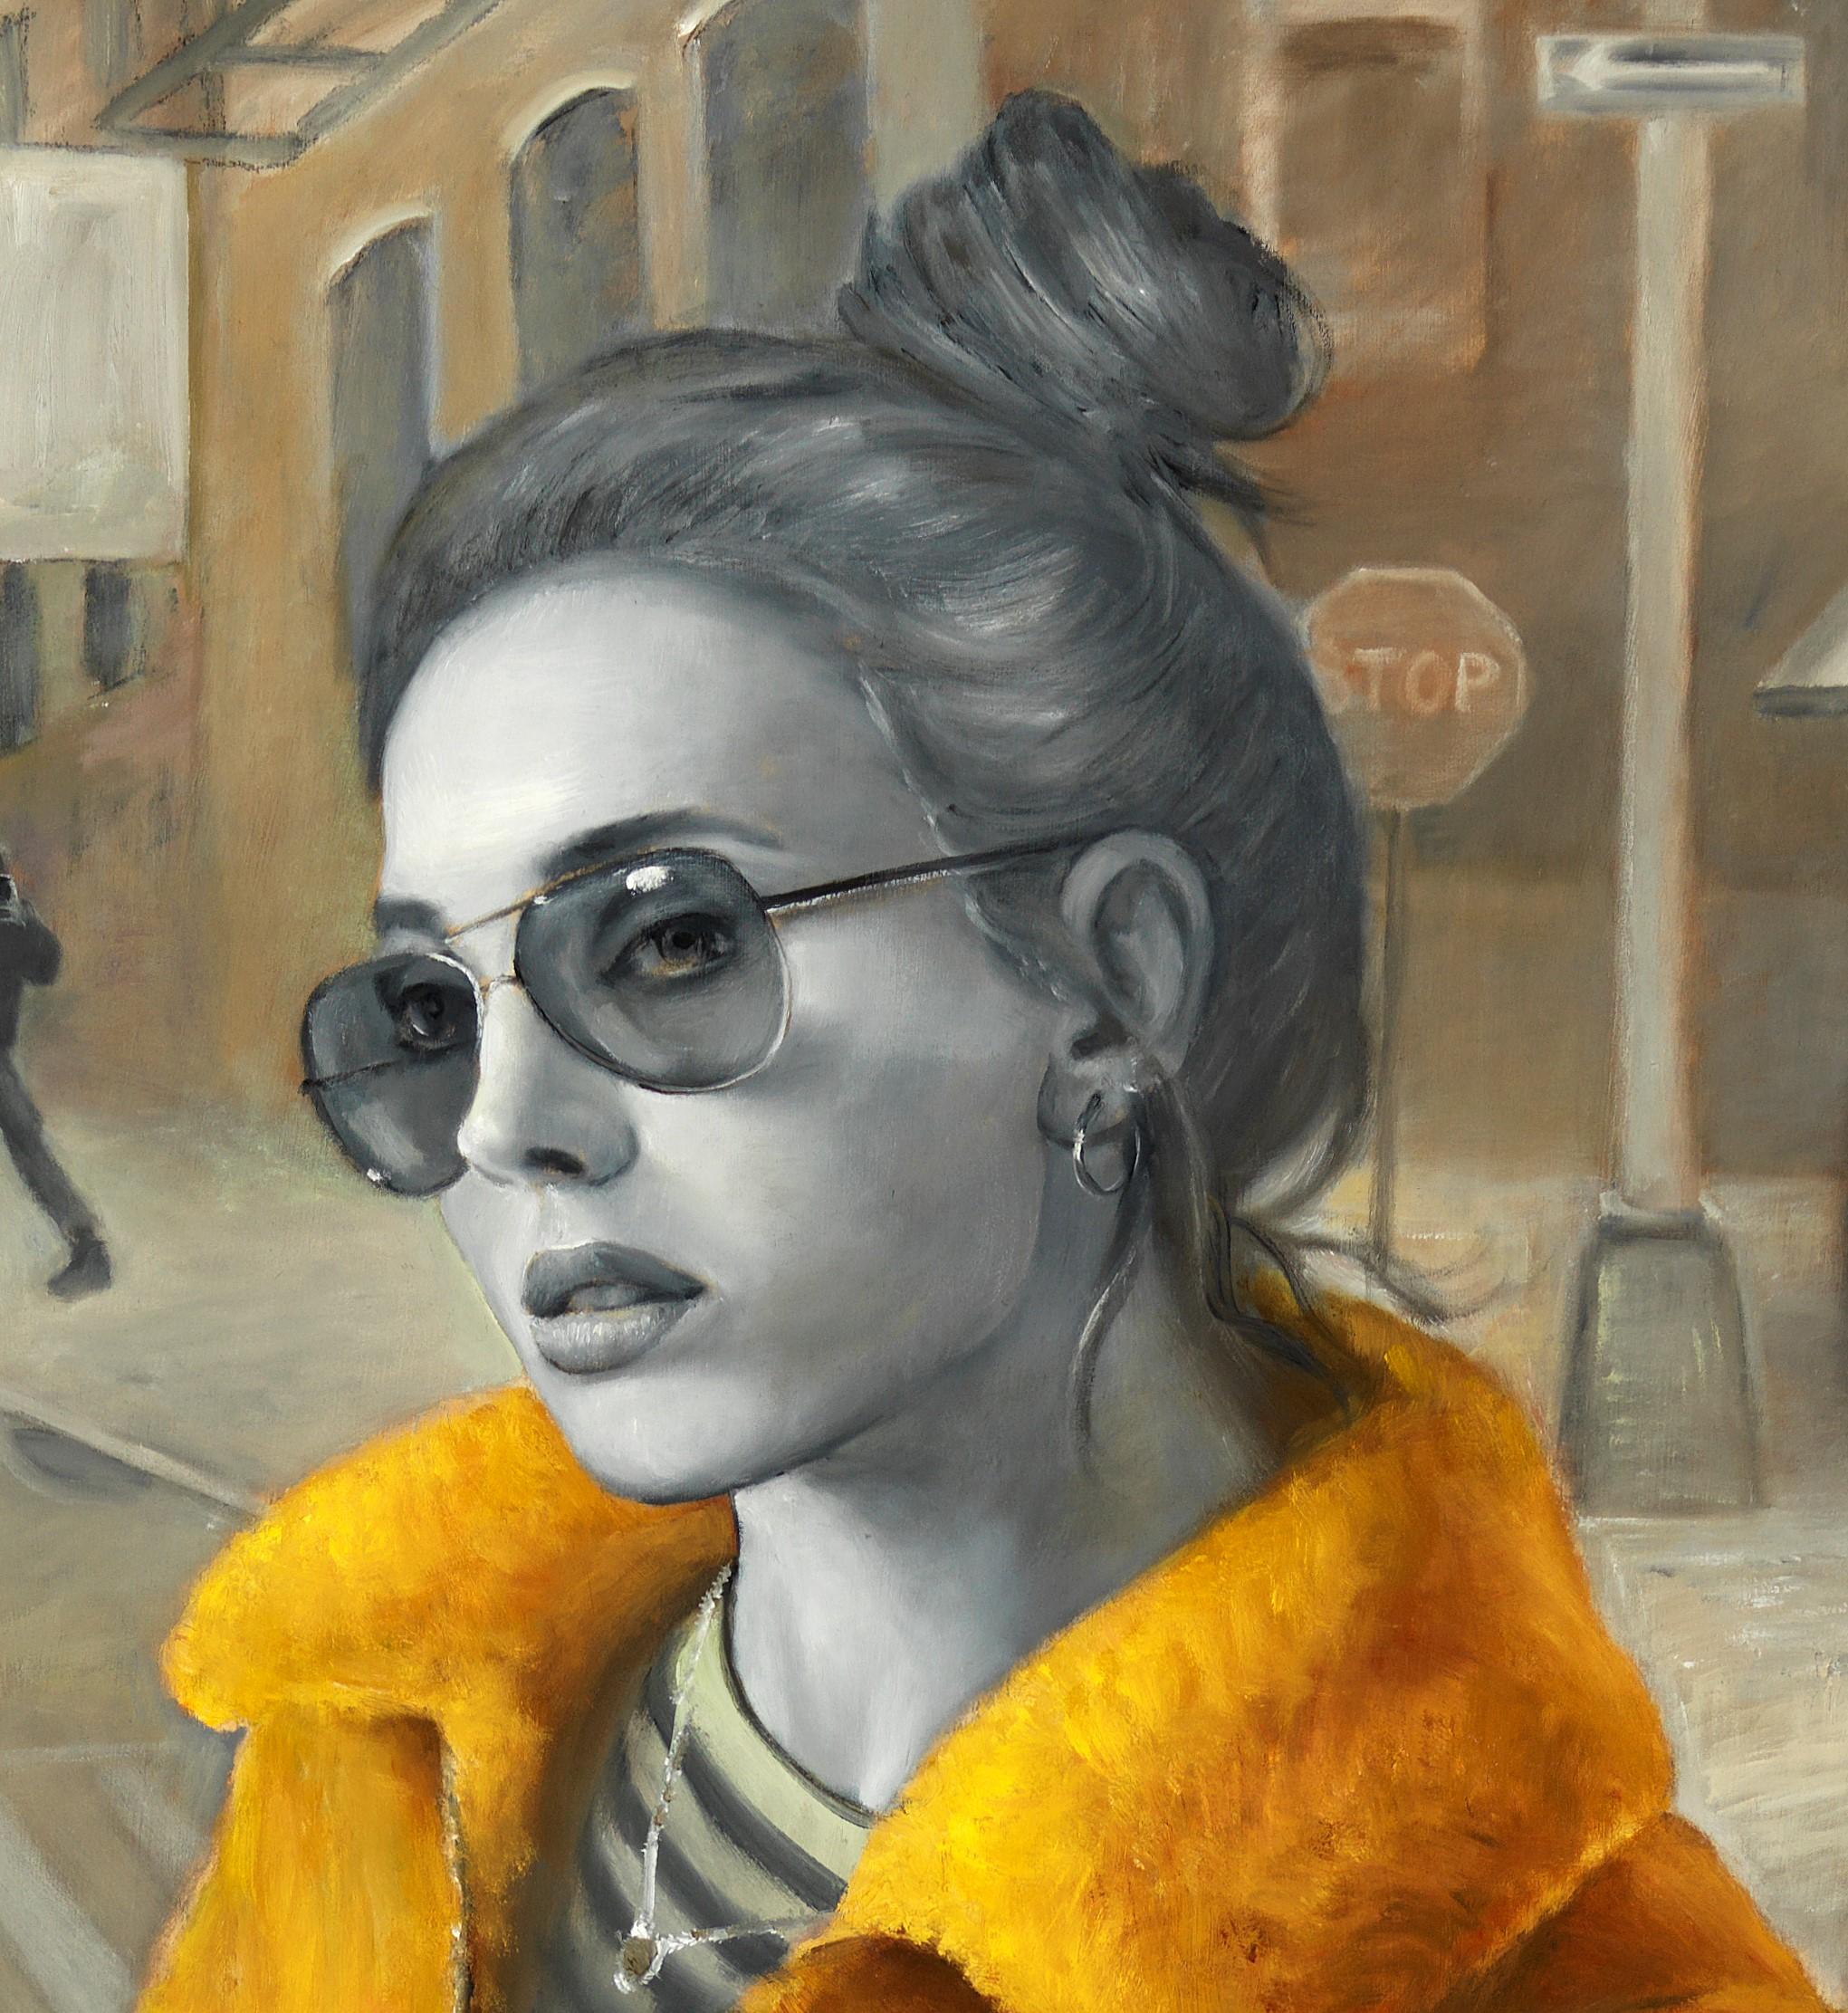 Worlds séparés de la réalité, Femme portant un manteau jaune vif, Ensemble urbain - Painting de Bruno Surdo